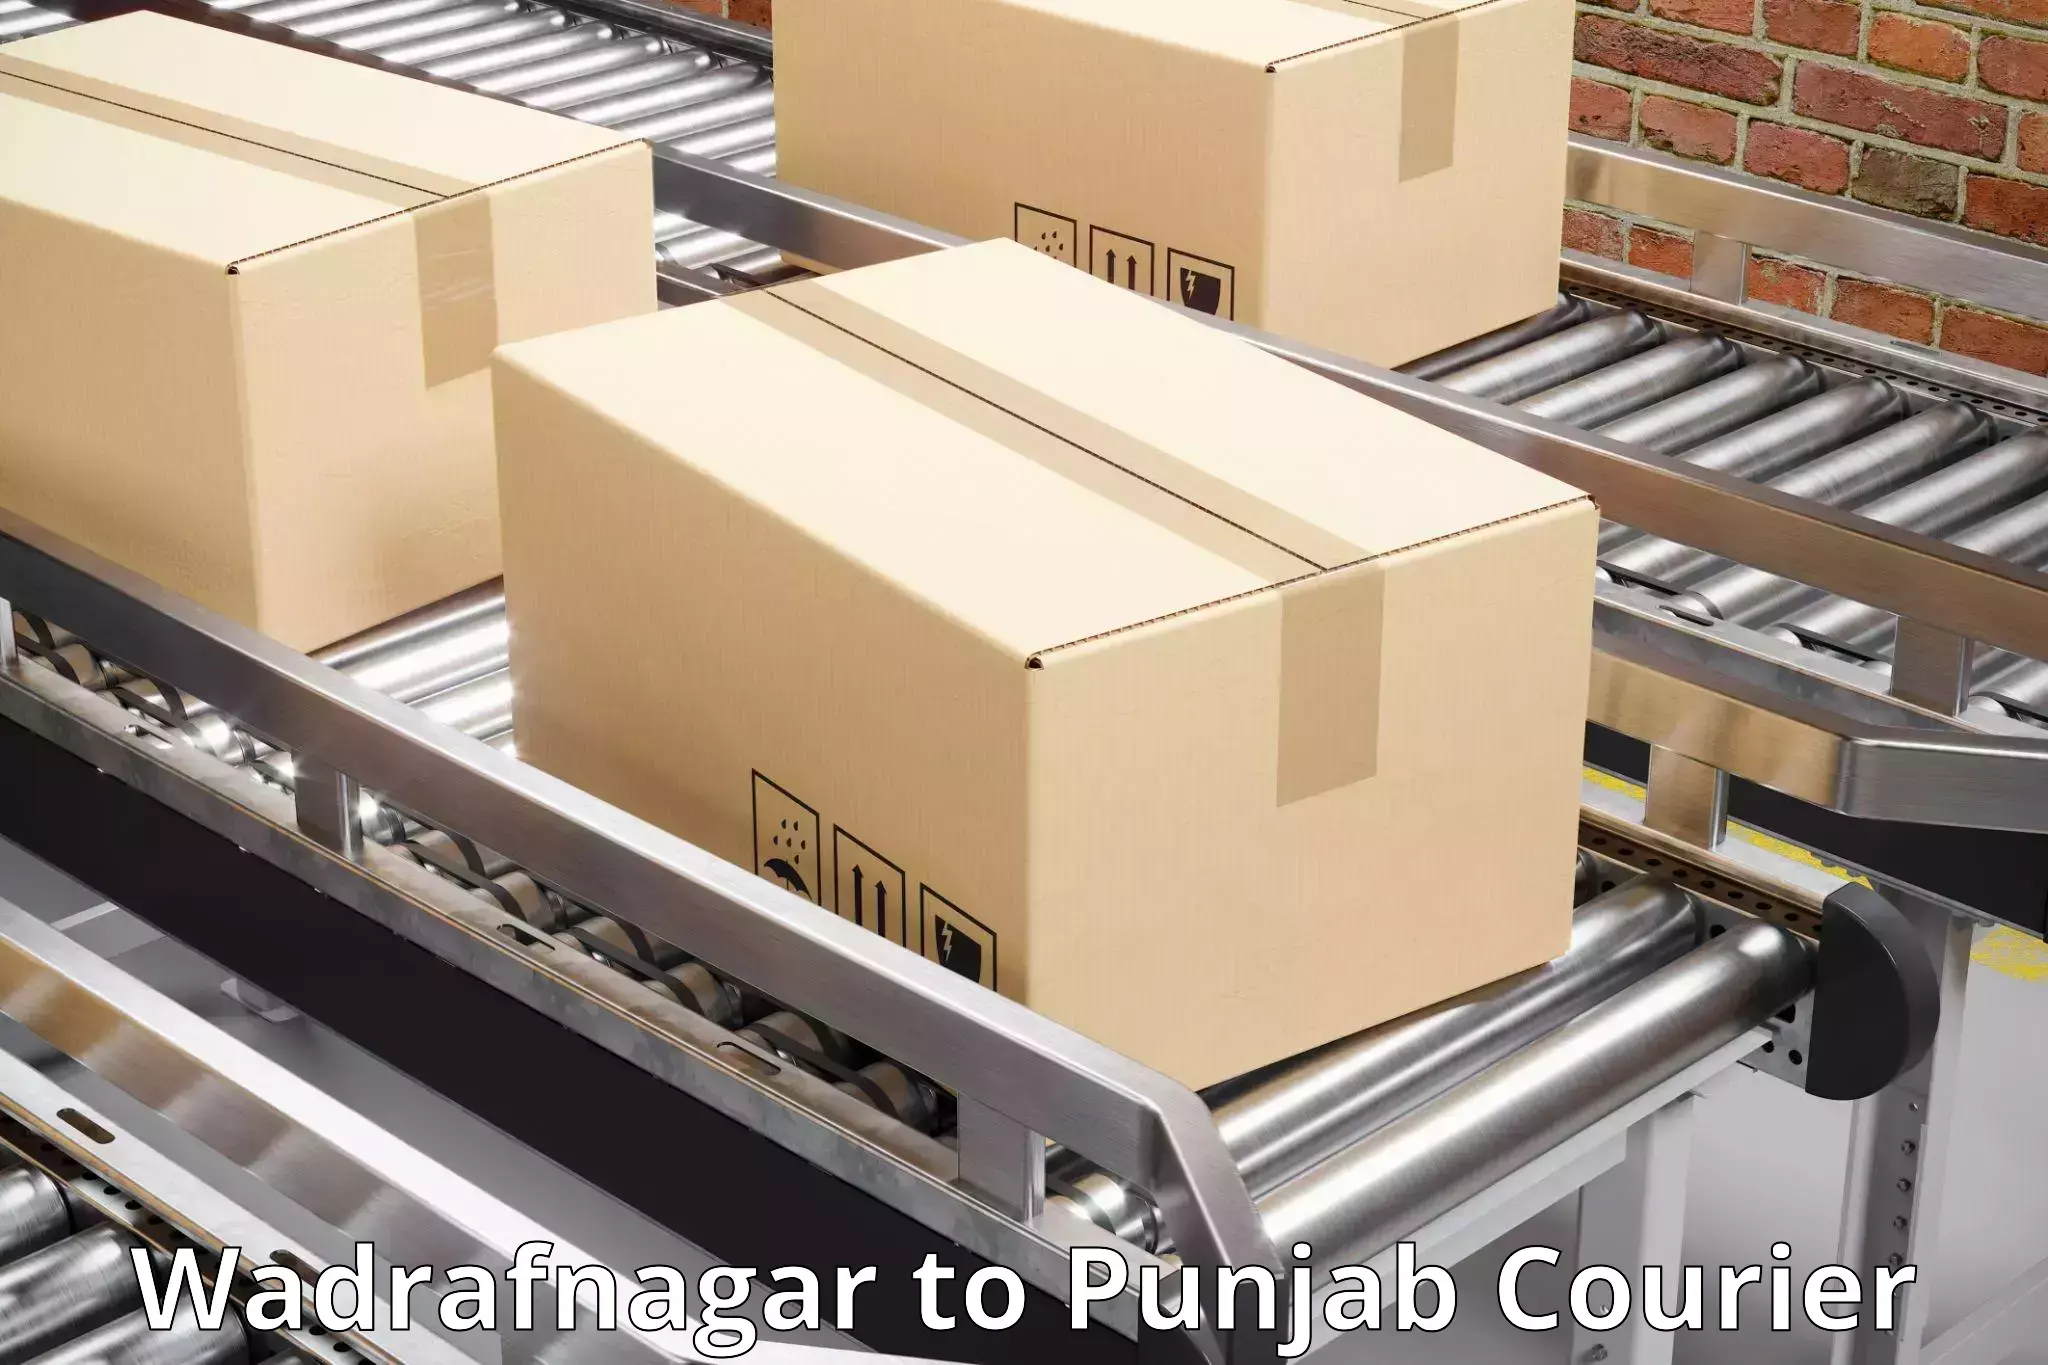 24/7 courier service in Wadrafnagar to IIT Ropar